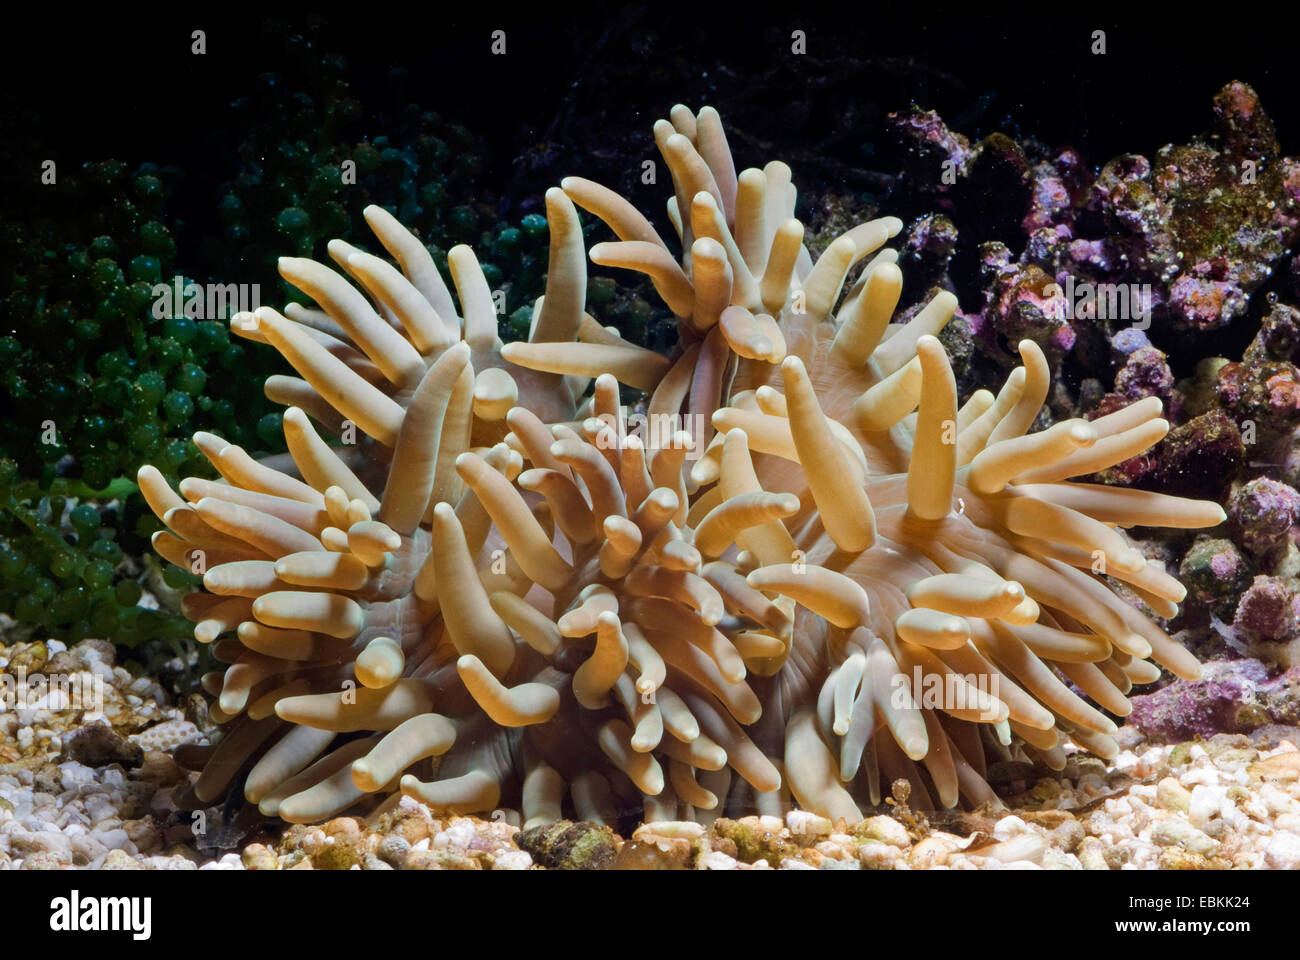 Cuoio anemone, coriacea anemone marittimo (Heteractis crispa), vista laterale Foto Stock